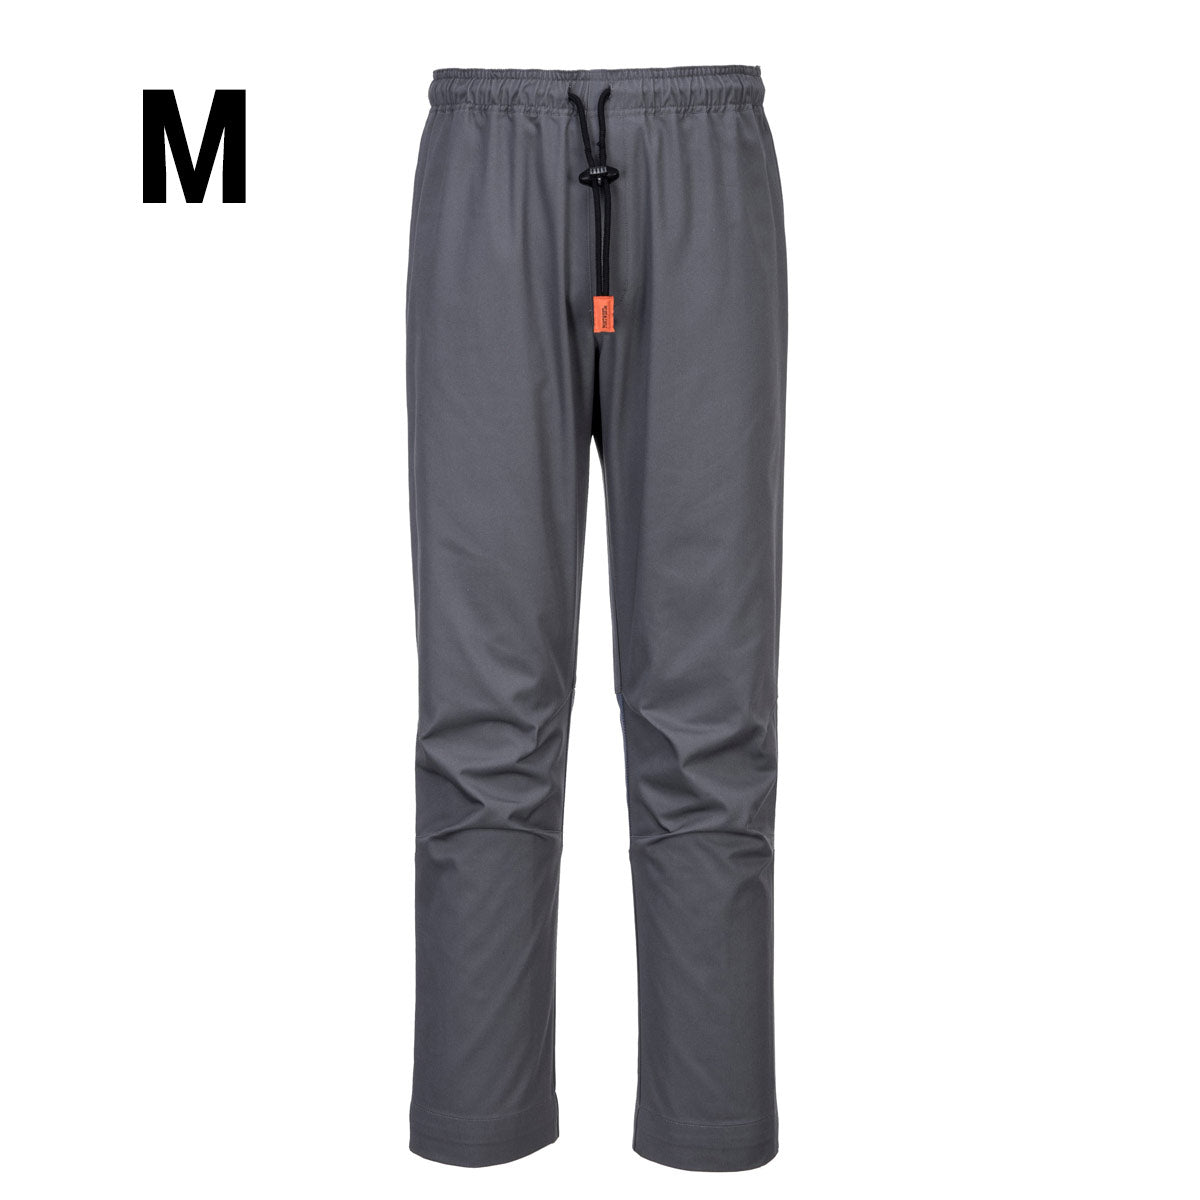 MeshAir Pro bukse - Grå - Størrelse: M